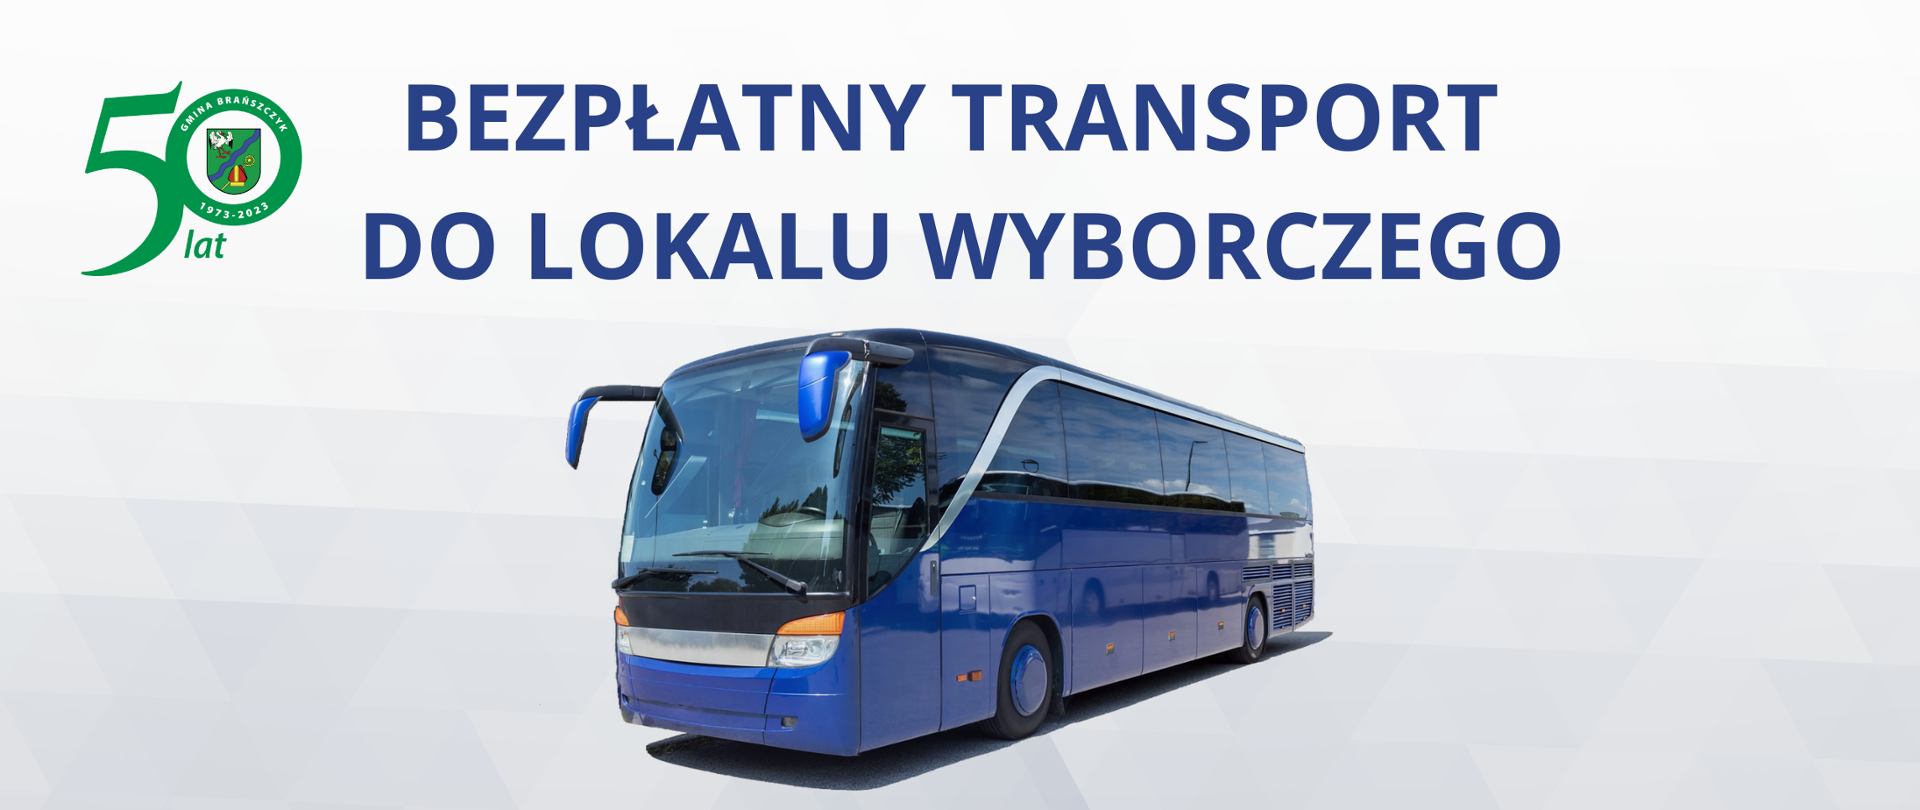 Logotyp na 50 lat gminy Brańszczyk, tekst: "Bezpłatny transport do lokalu wyborczego", poniżej autobus w kolorze niebieskim.